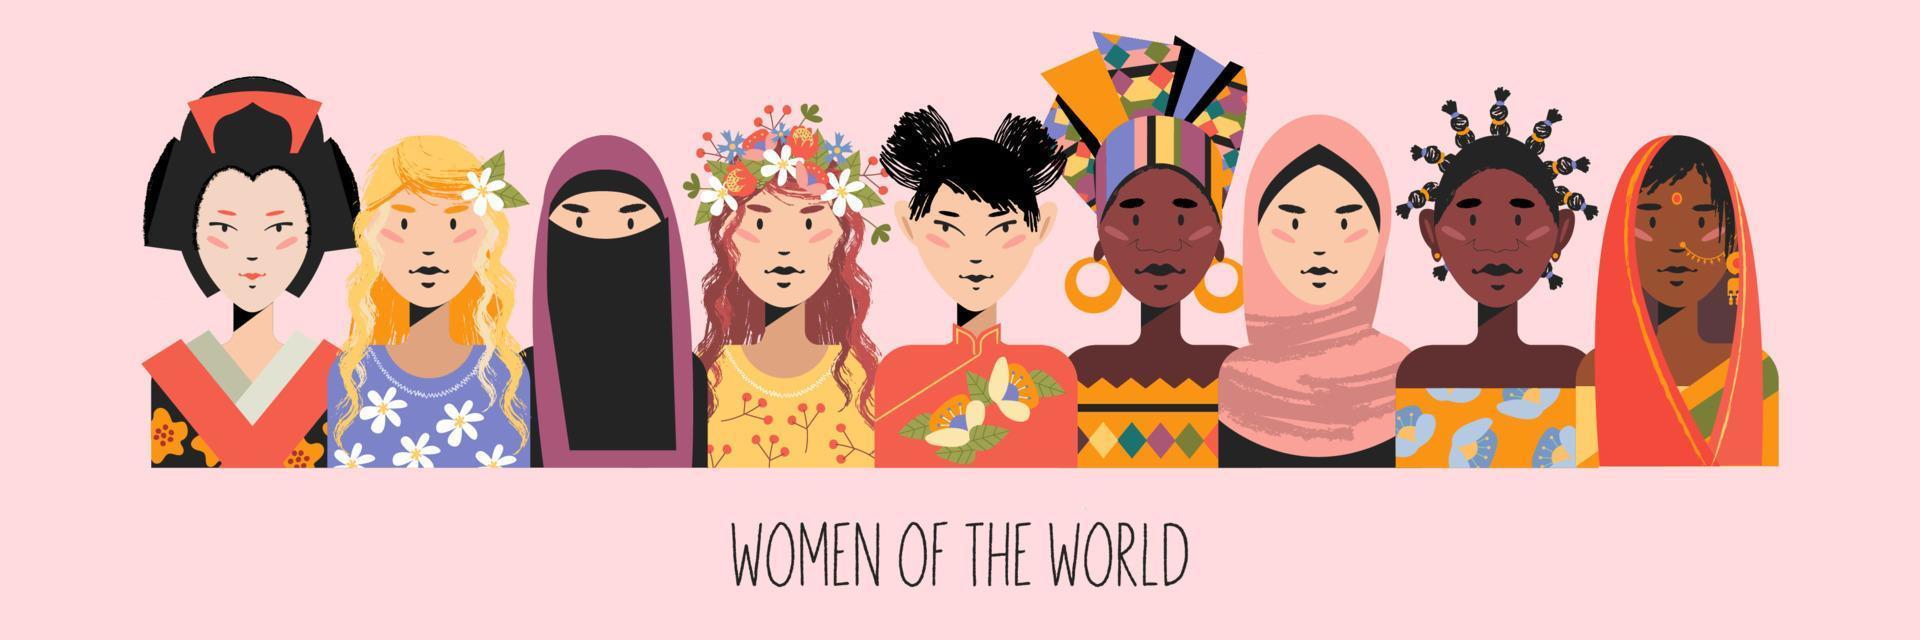 donne di tutto il mondo. donne in abiti tradizionali. illustrazione vettoriale. vettore